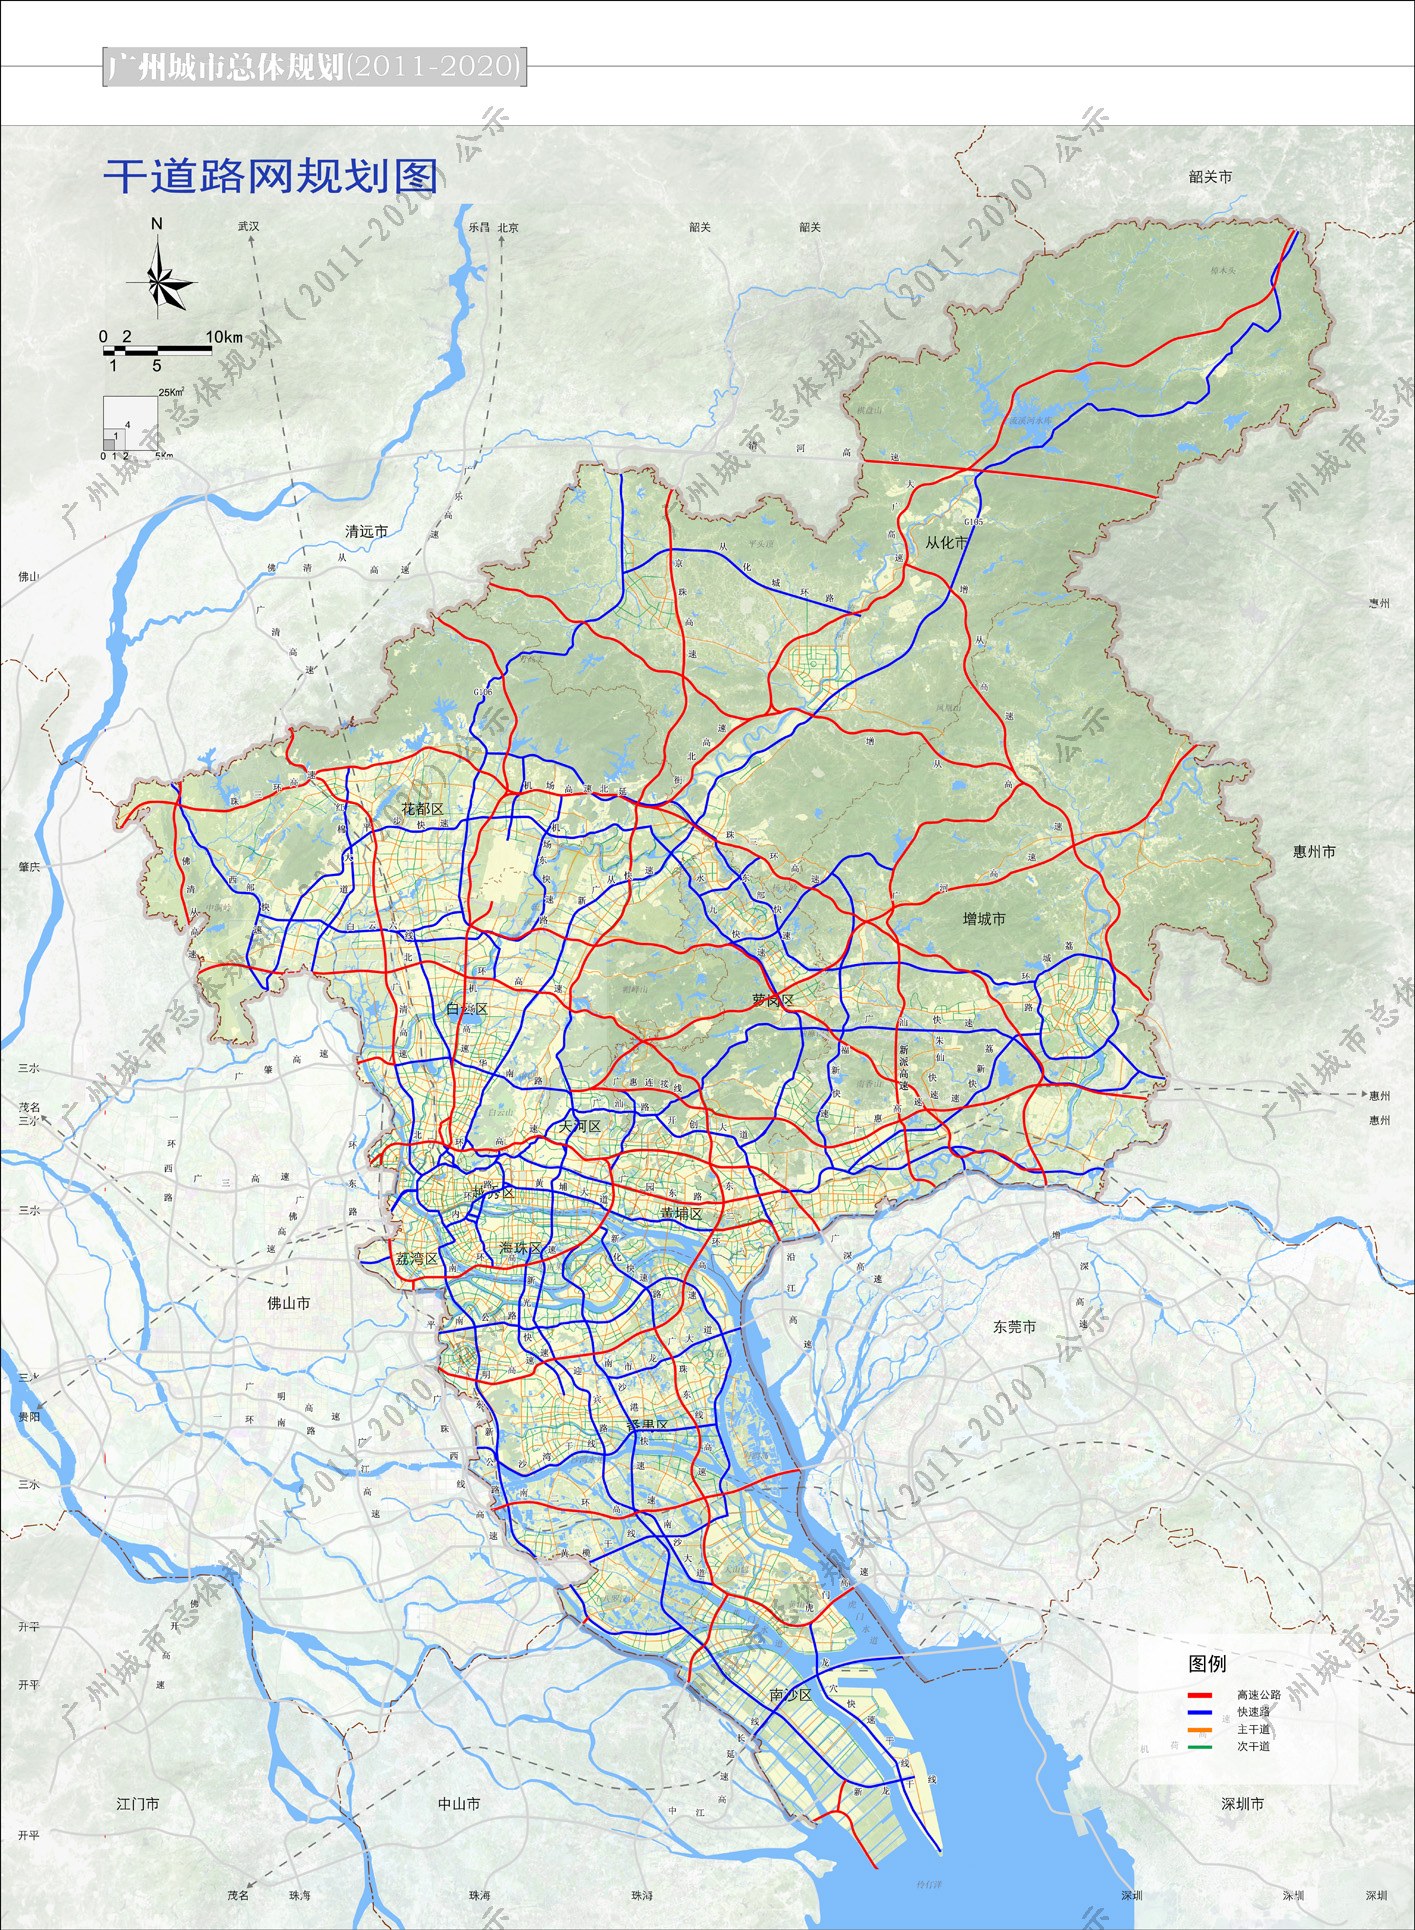 广州城市总体规划(20112020)草案公示